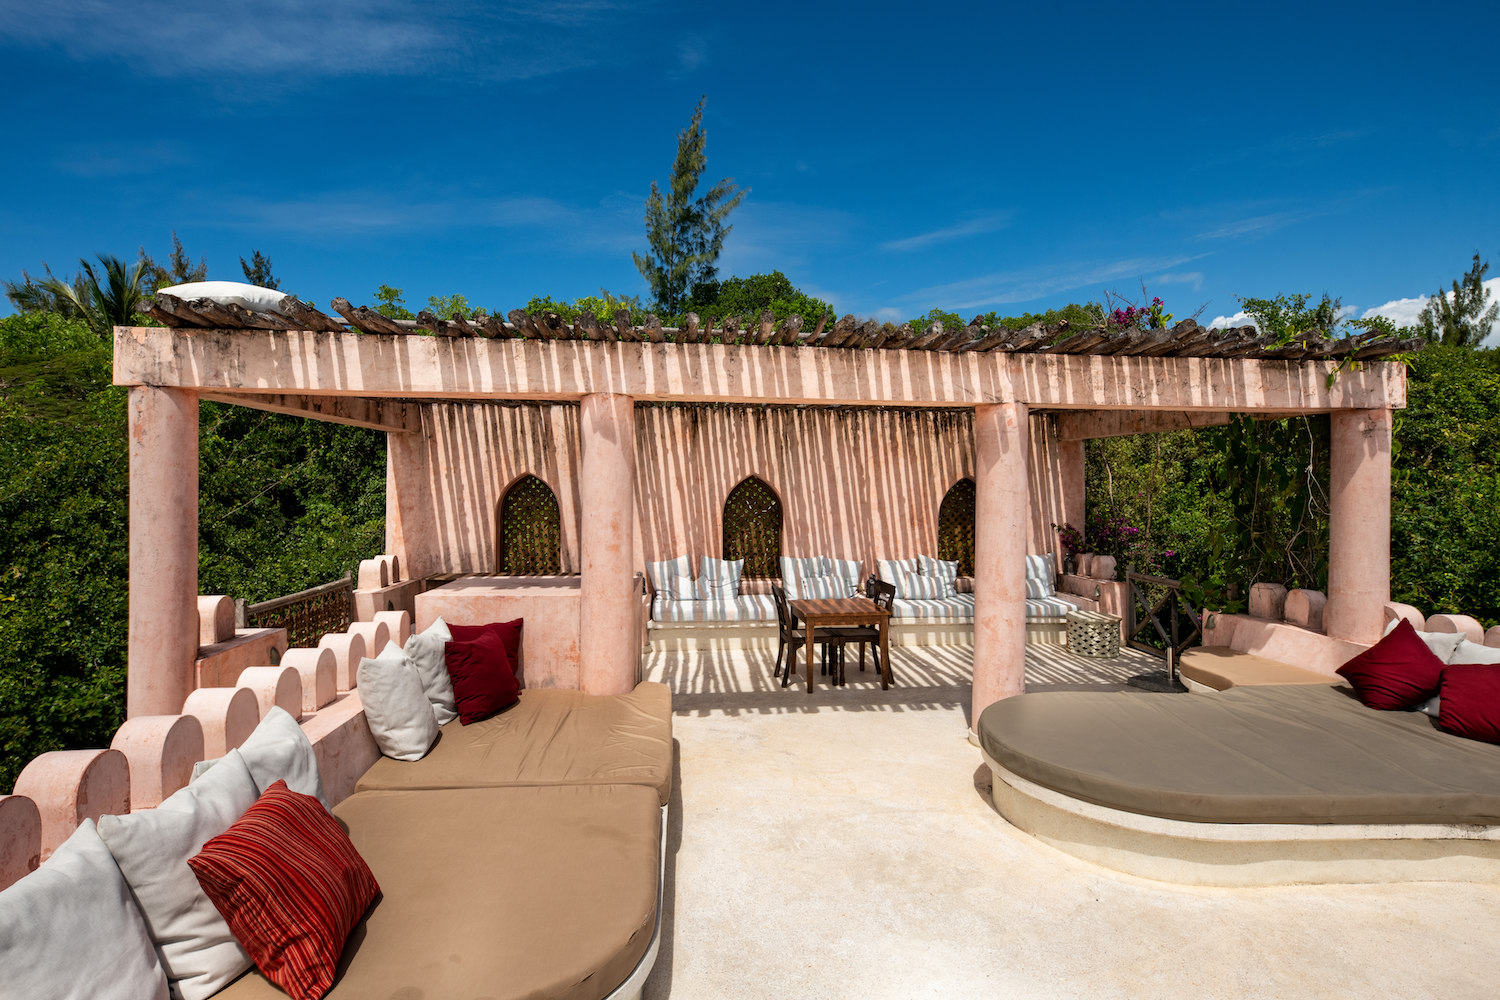 Qambani Luxury Resort Zanzibar Hotel - Sundowner Villa rooftop with shade and seating area